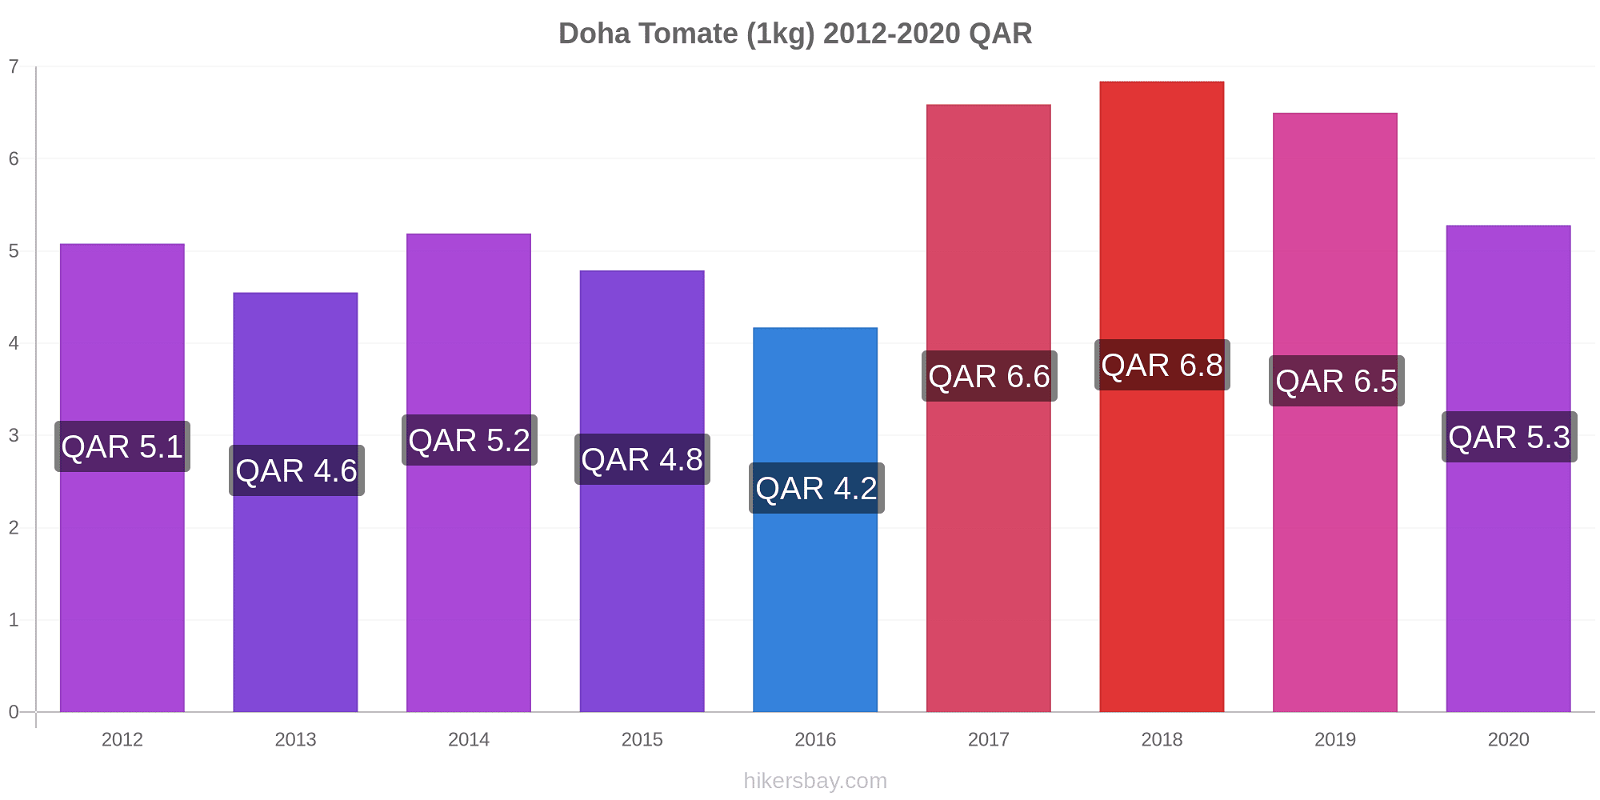 Doha variação de preço Tomate (1kg) hikersbay.com